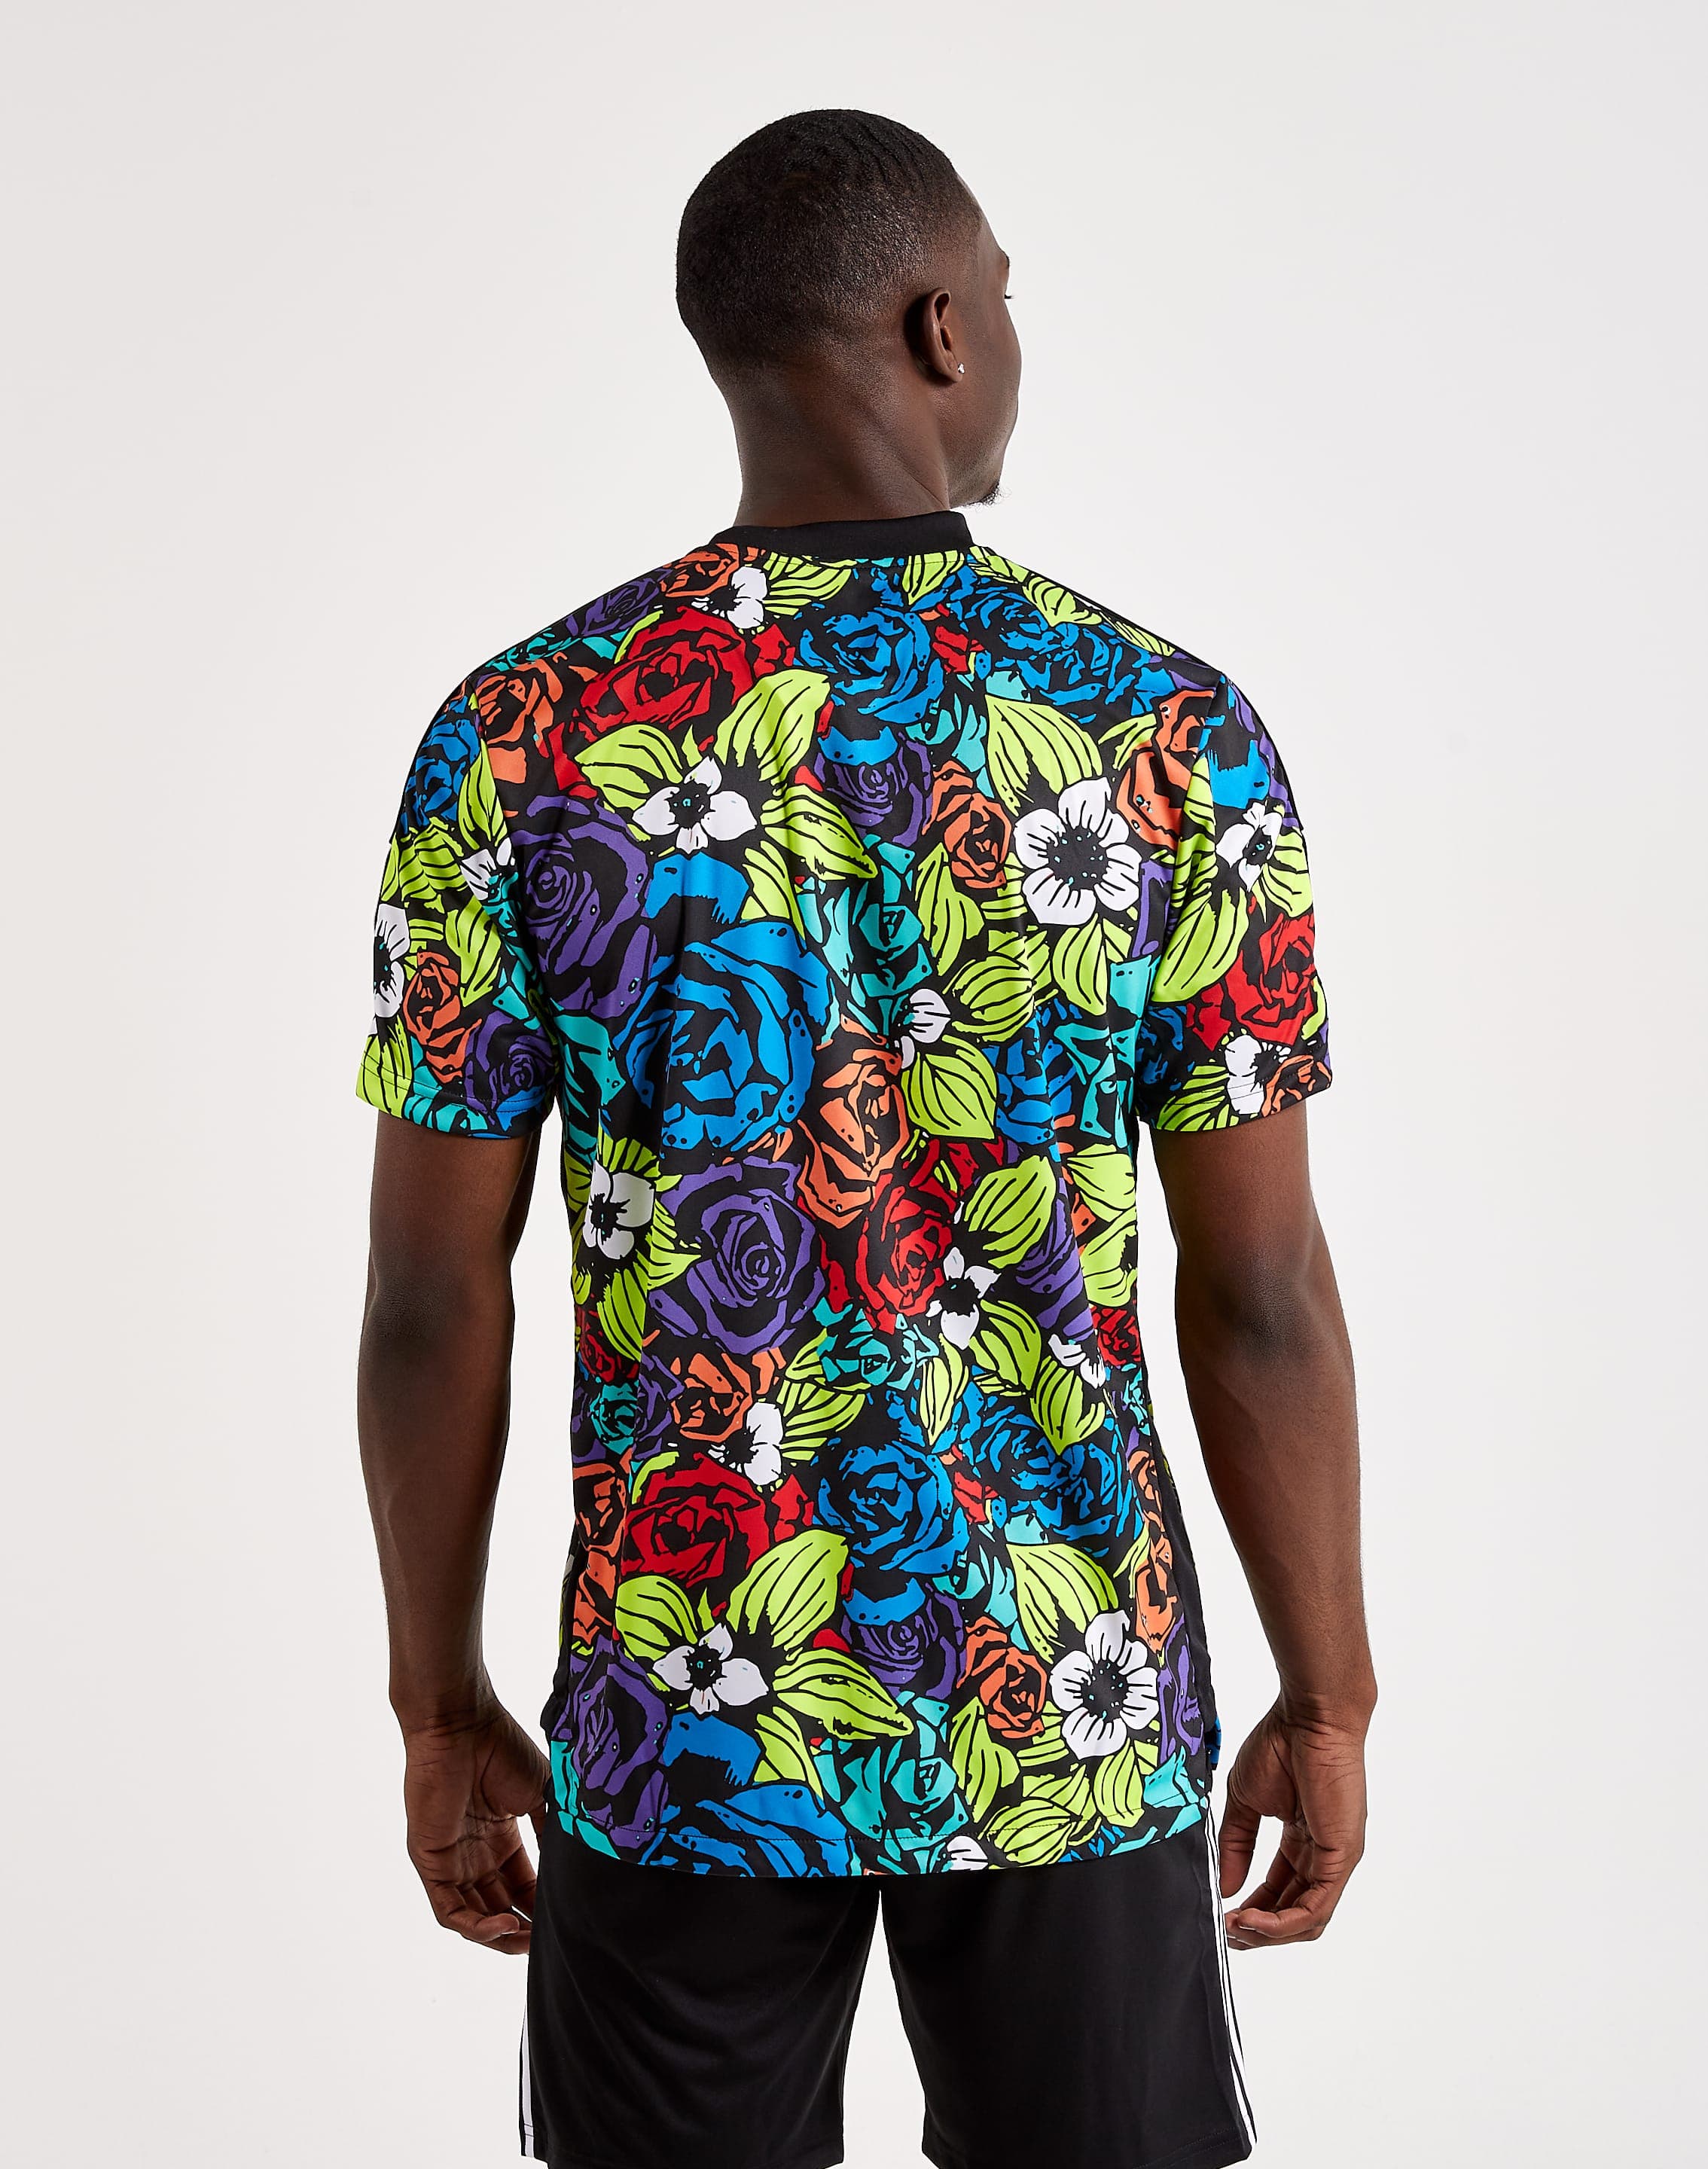 adidas Men's Tiro Flower Jersey T-Shirt - Macy's